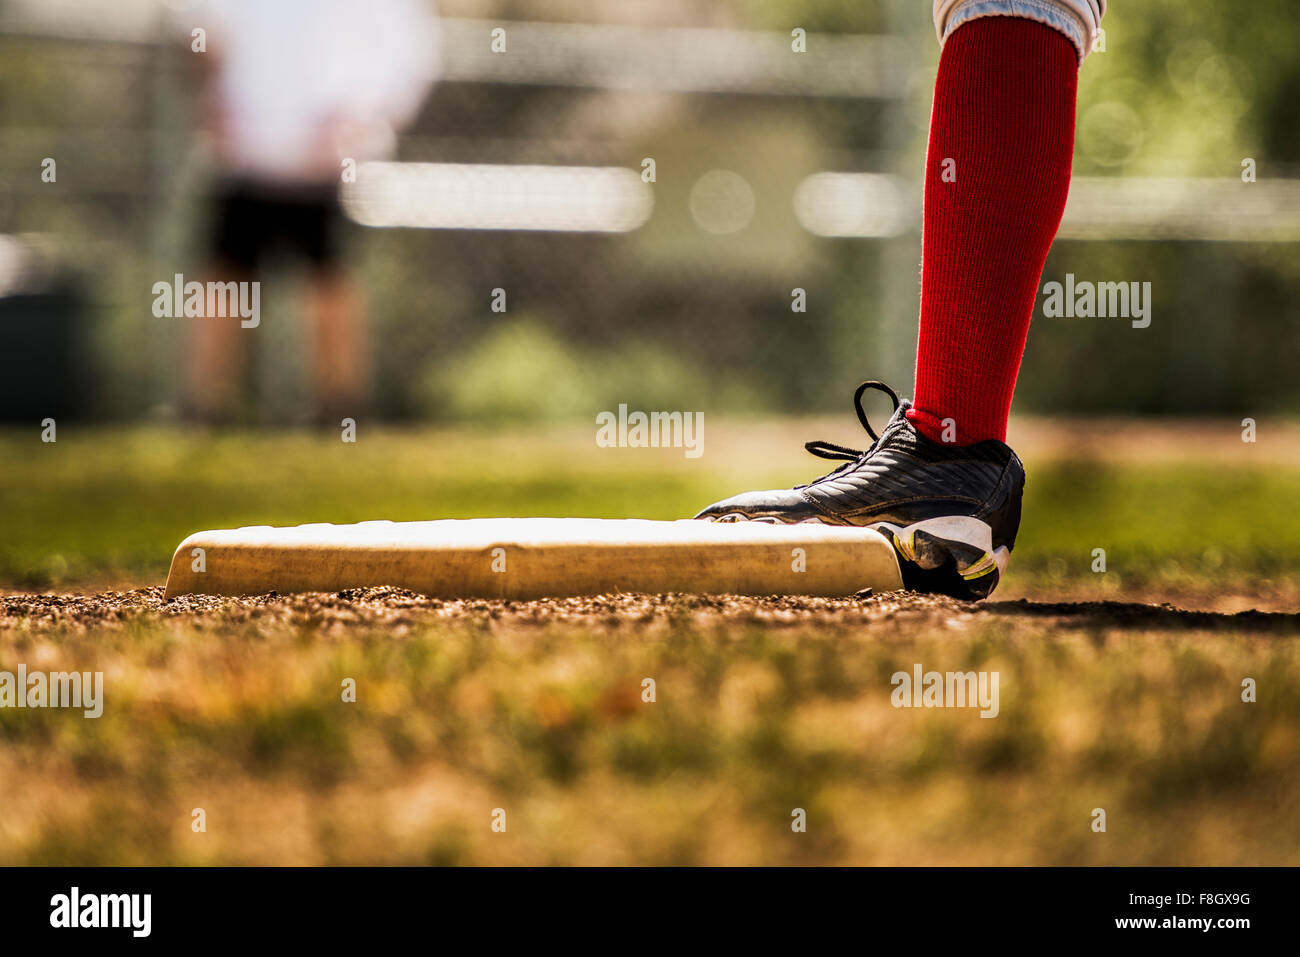 Baseball player touching base Stock Photo